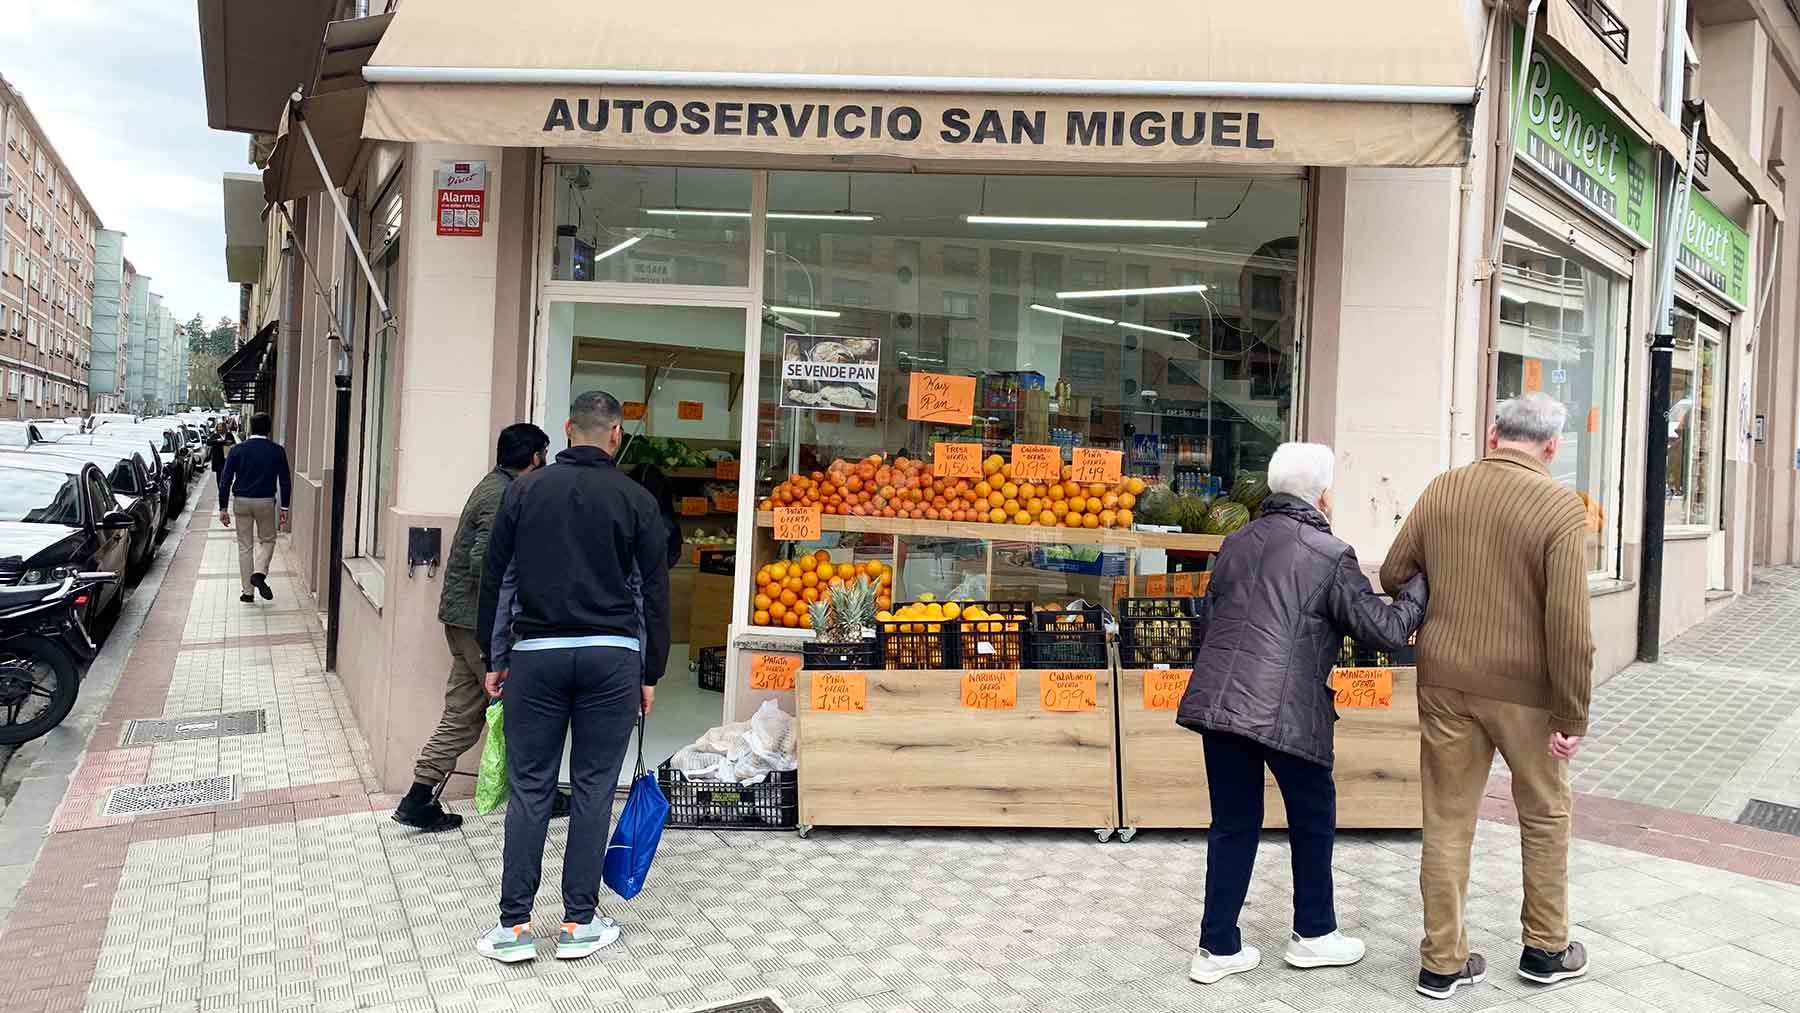 La frutería San Miguel está en la calle Tajonar 2, esquina con la calle Santa Marta en Pamplona. Navarra.com